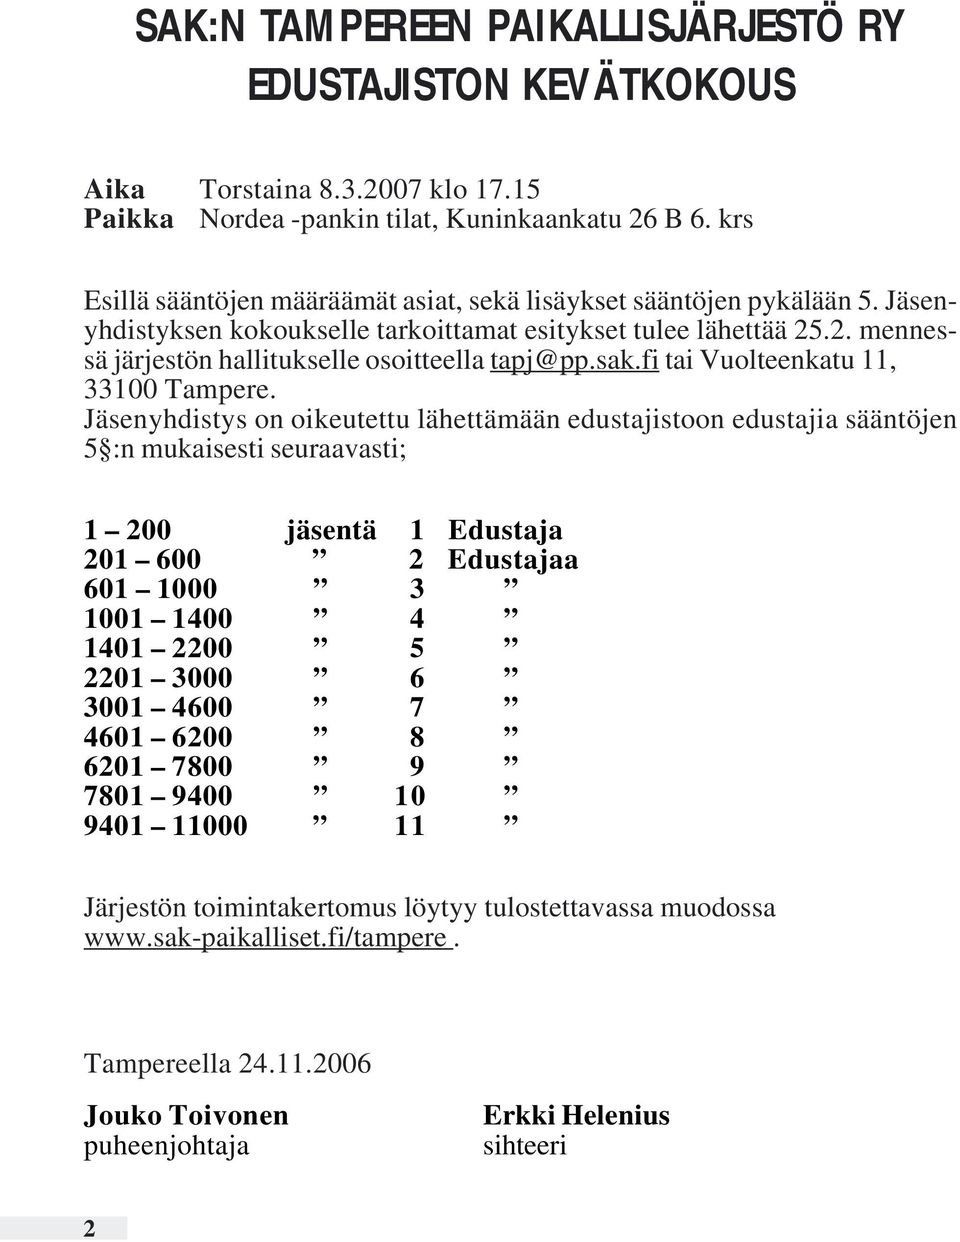 sak.fi tai Vuolteenkatu 11, 33100.